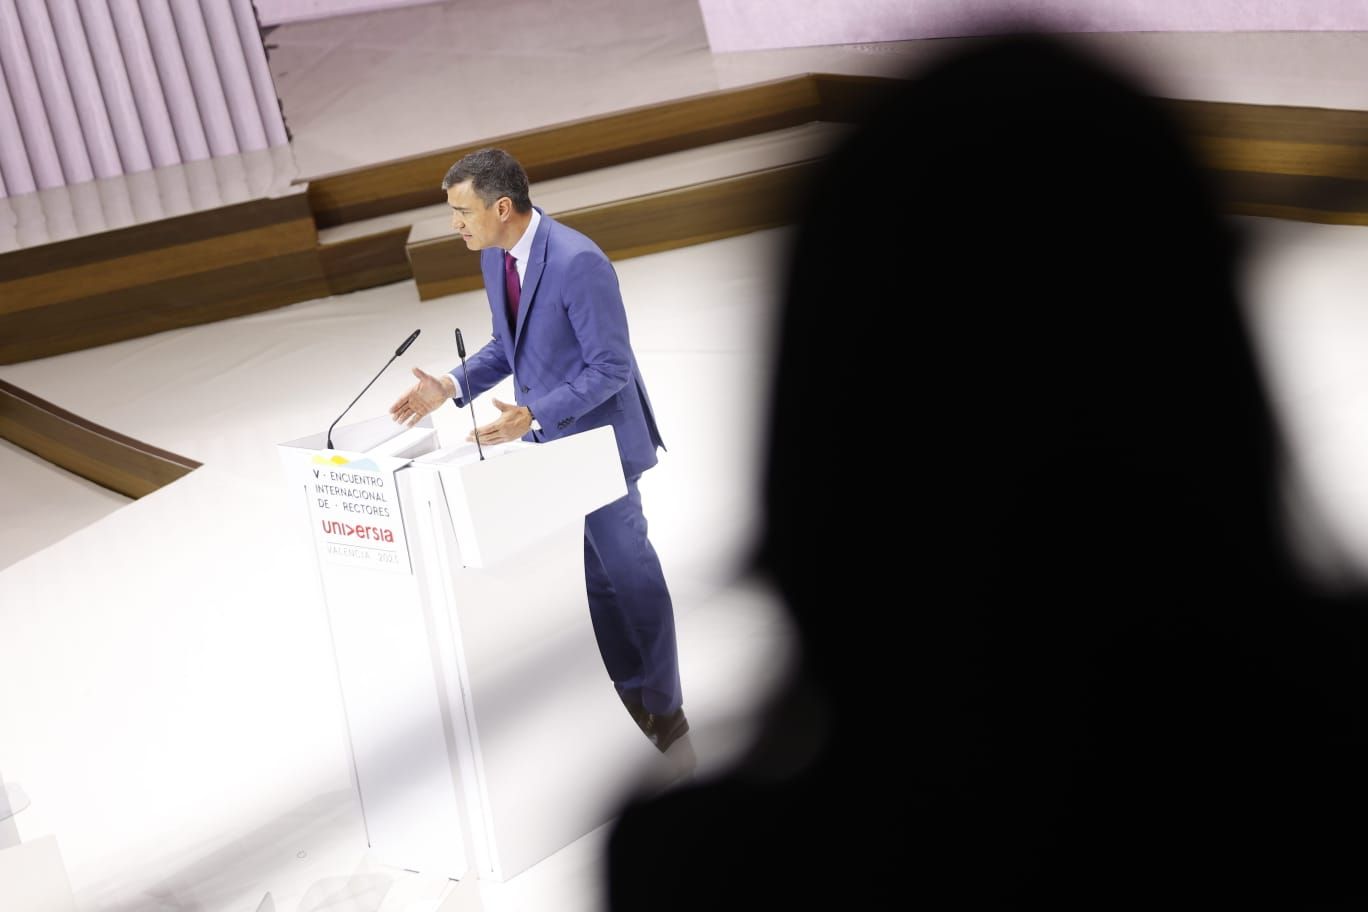 Pedro Sánchez inaugura el V Encuentro Internacional de Rectores Universia